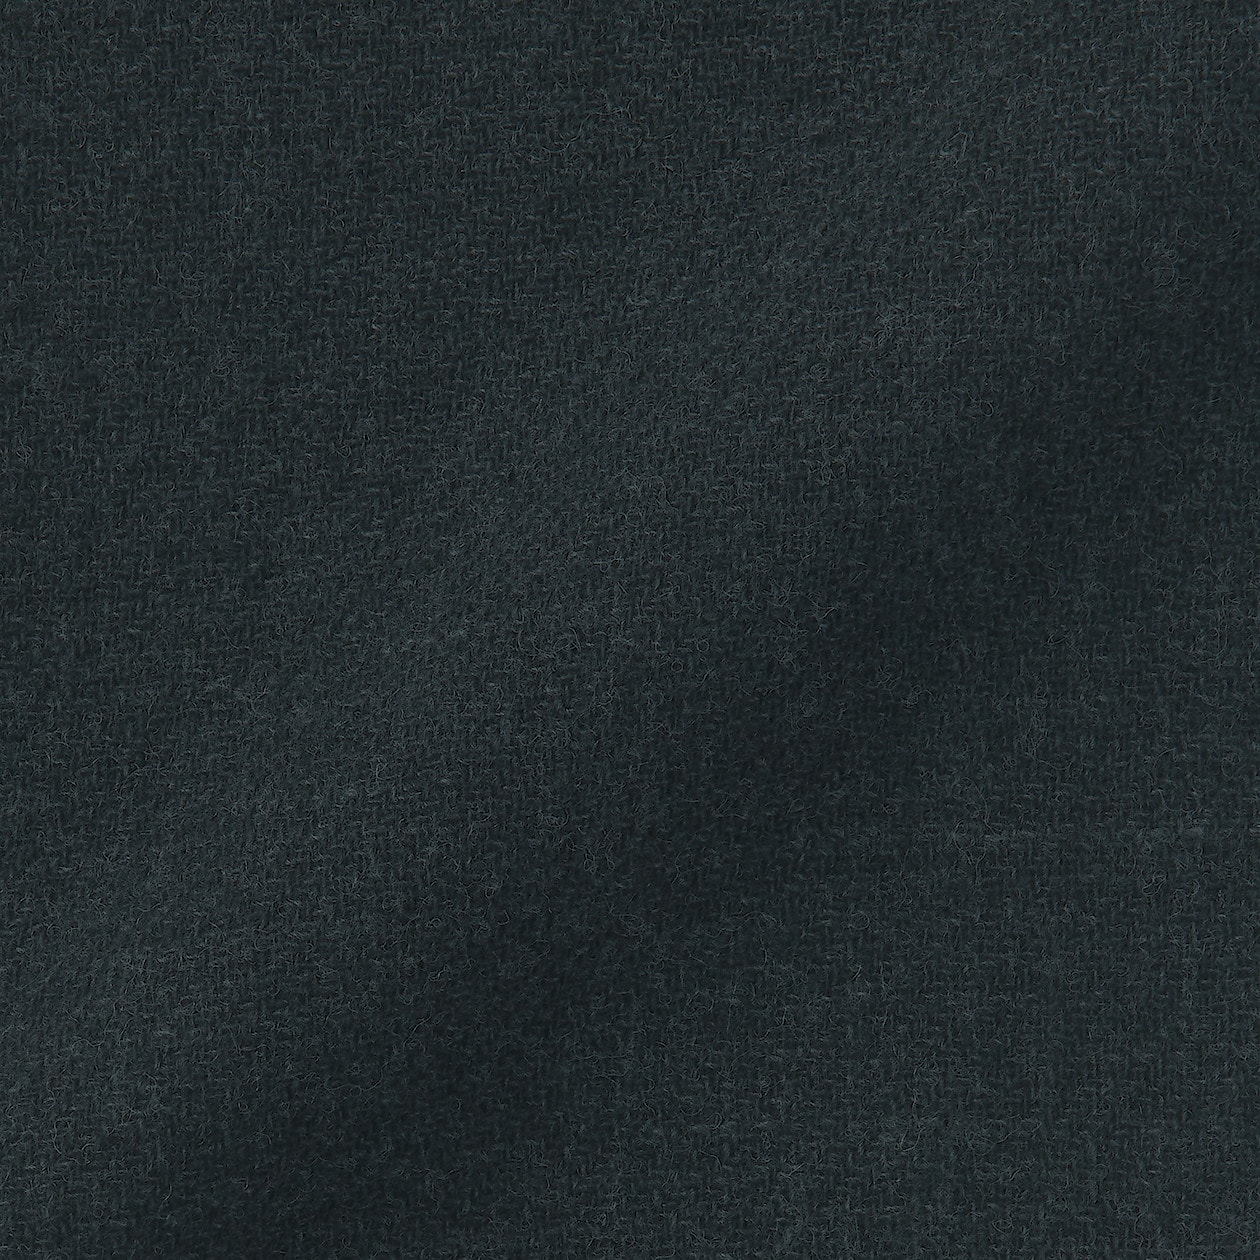 再生ウール混二重織りパンツ | 無印良品